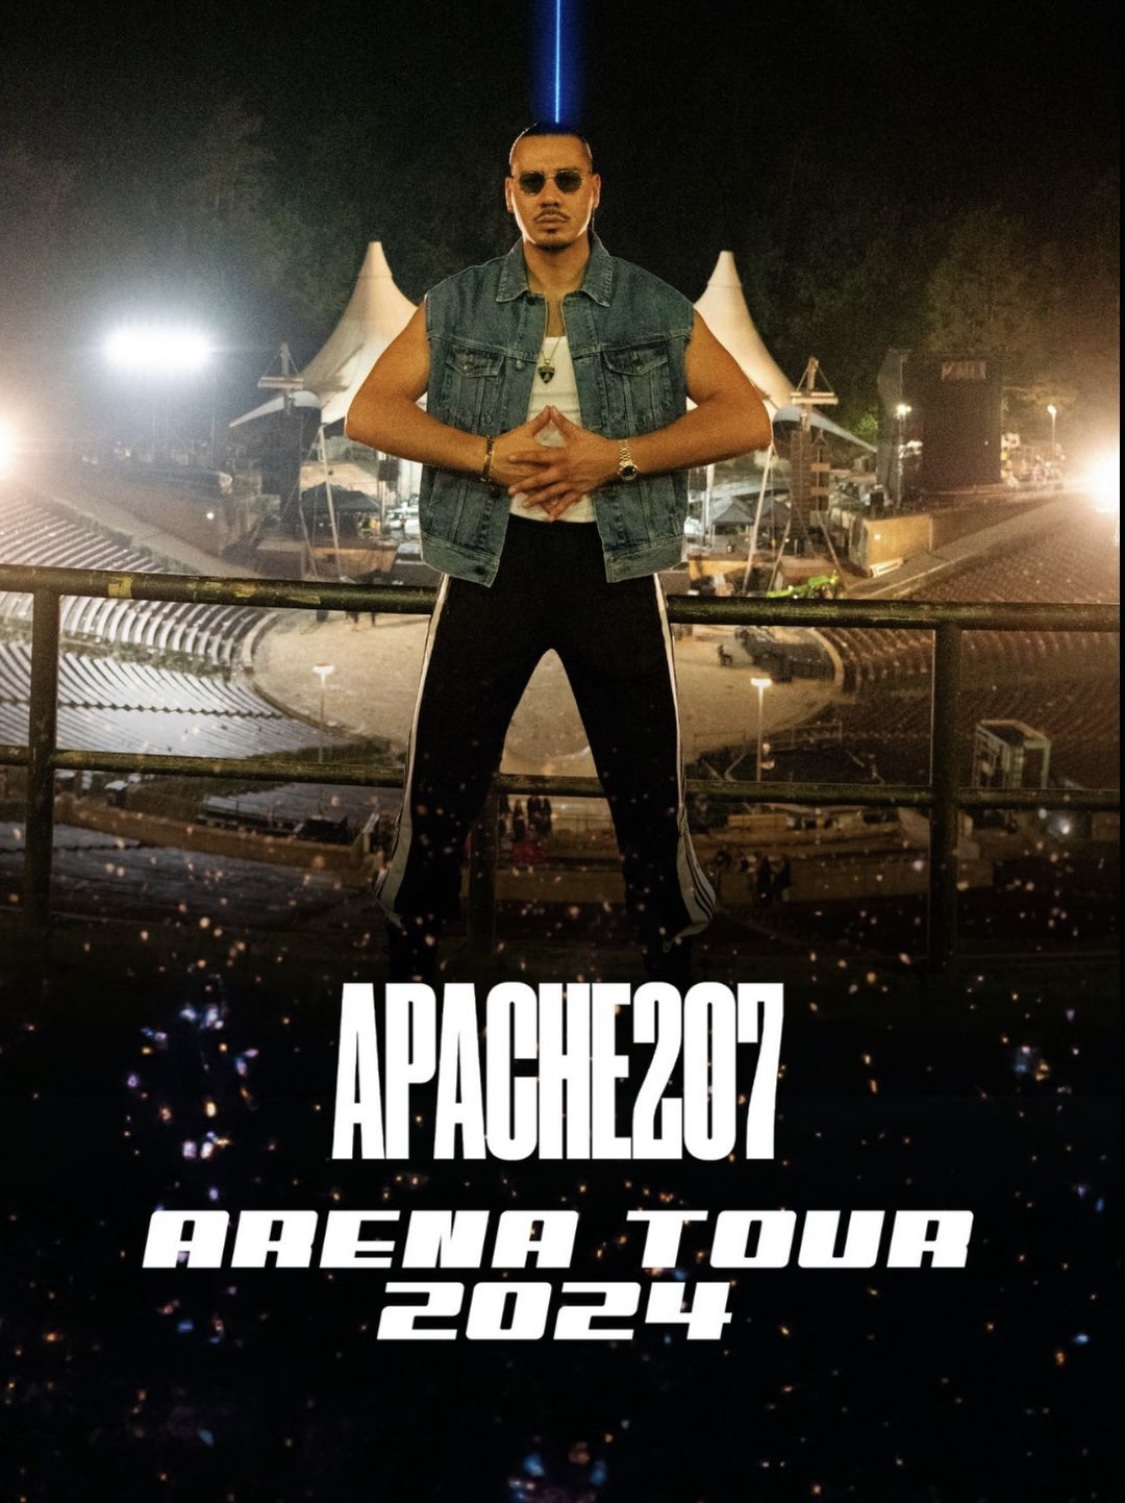 APACHE 207 Apache 207 kündigt mit LASER seine Arena Tour 2024 an! Smago